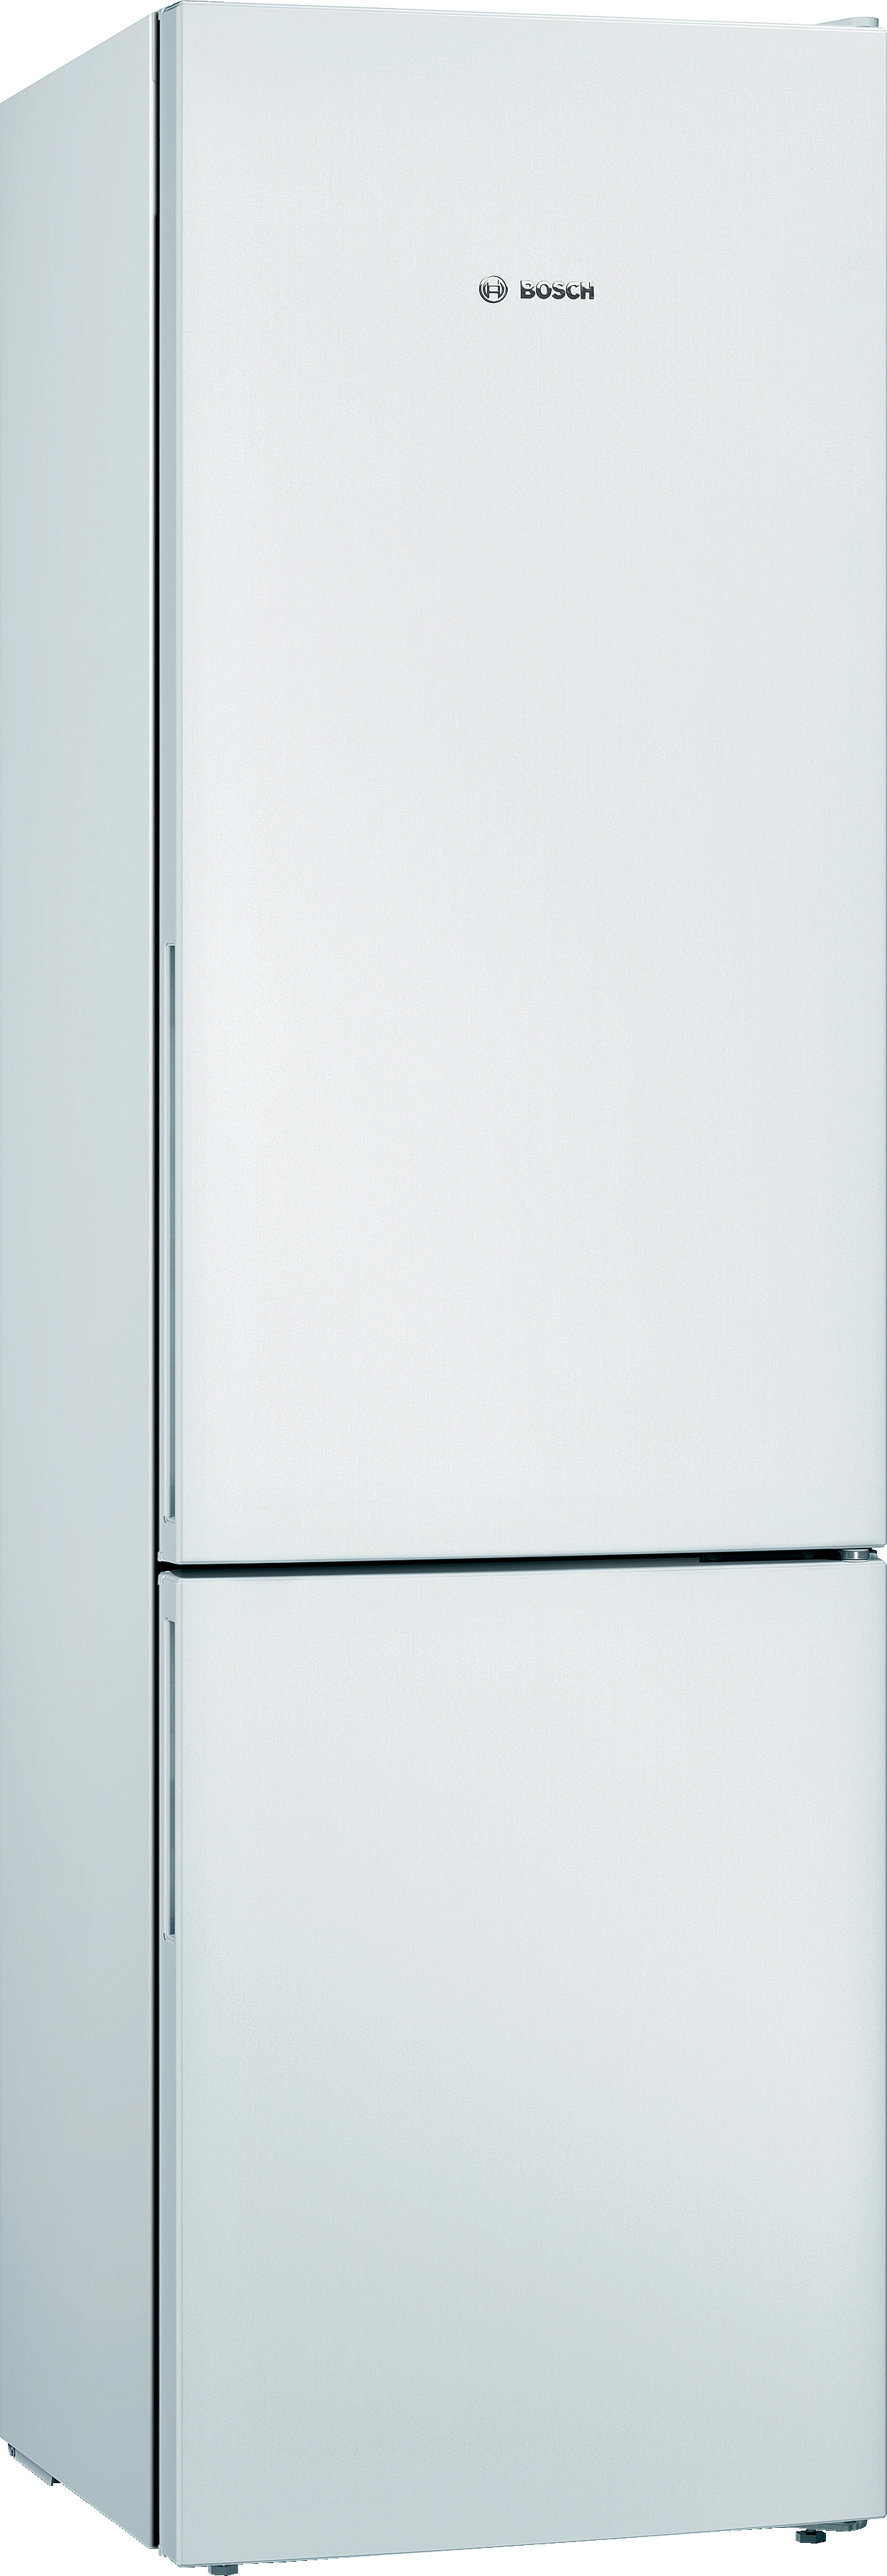 Холодильник Bosch KGV39VW316 в интернет-магазине, главное фото